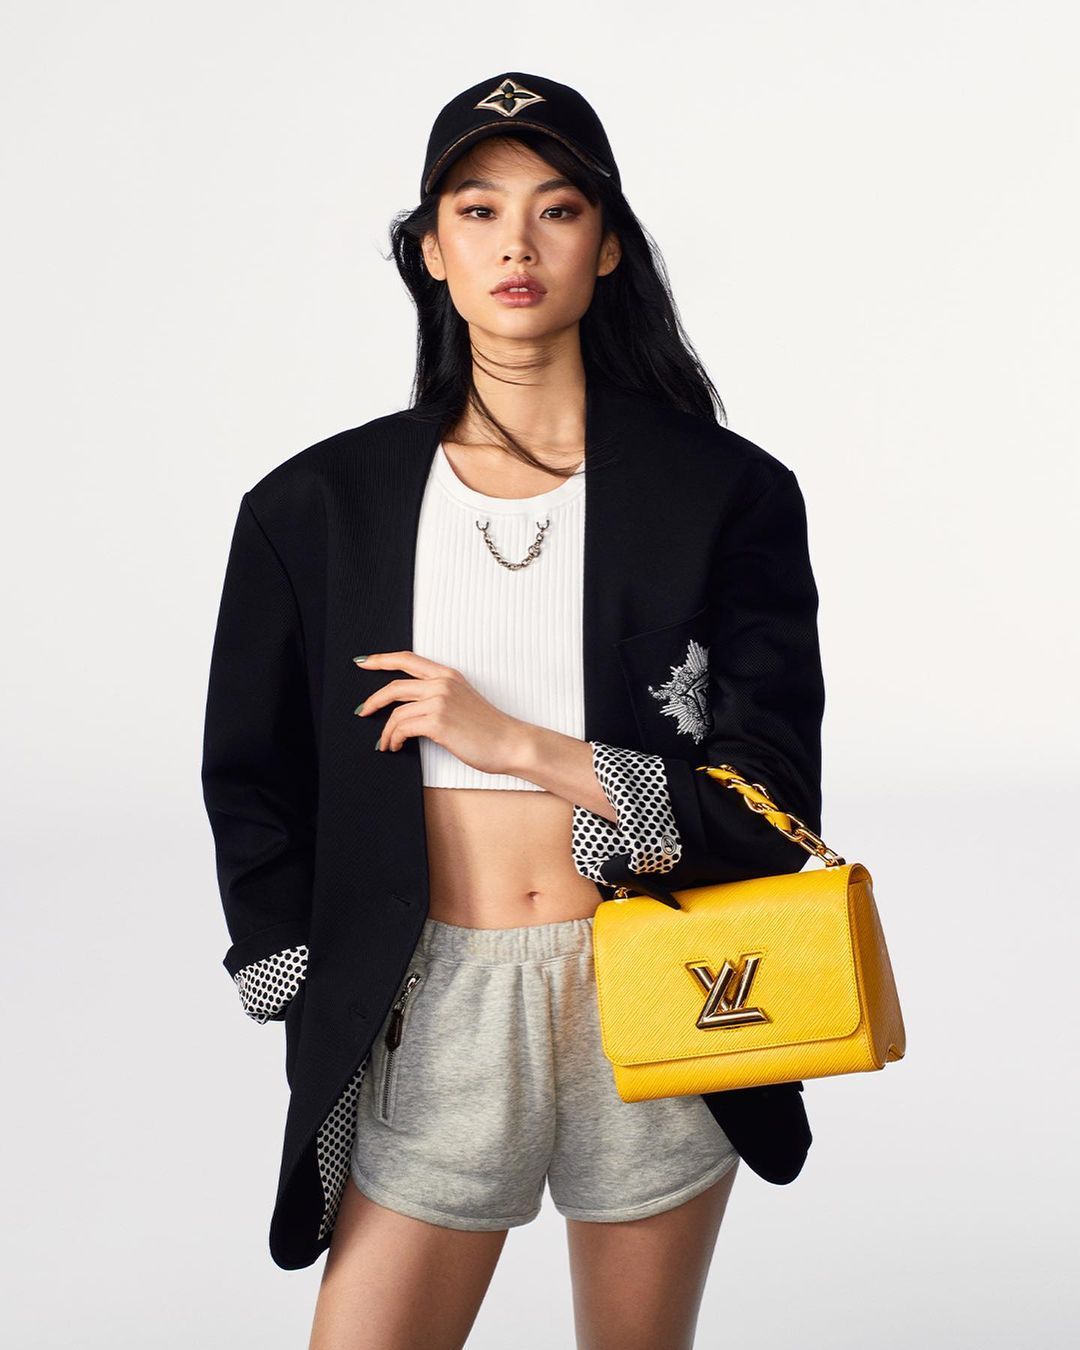 Jung Ho Yeon, memamerkan sisi glamornya melalui pemotretan baru untuk merek Louis Vuitton.